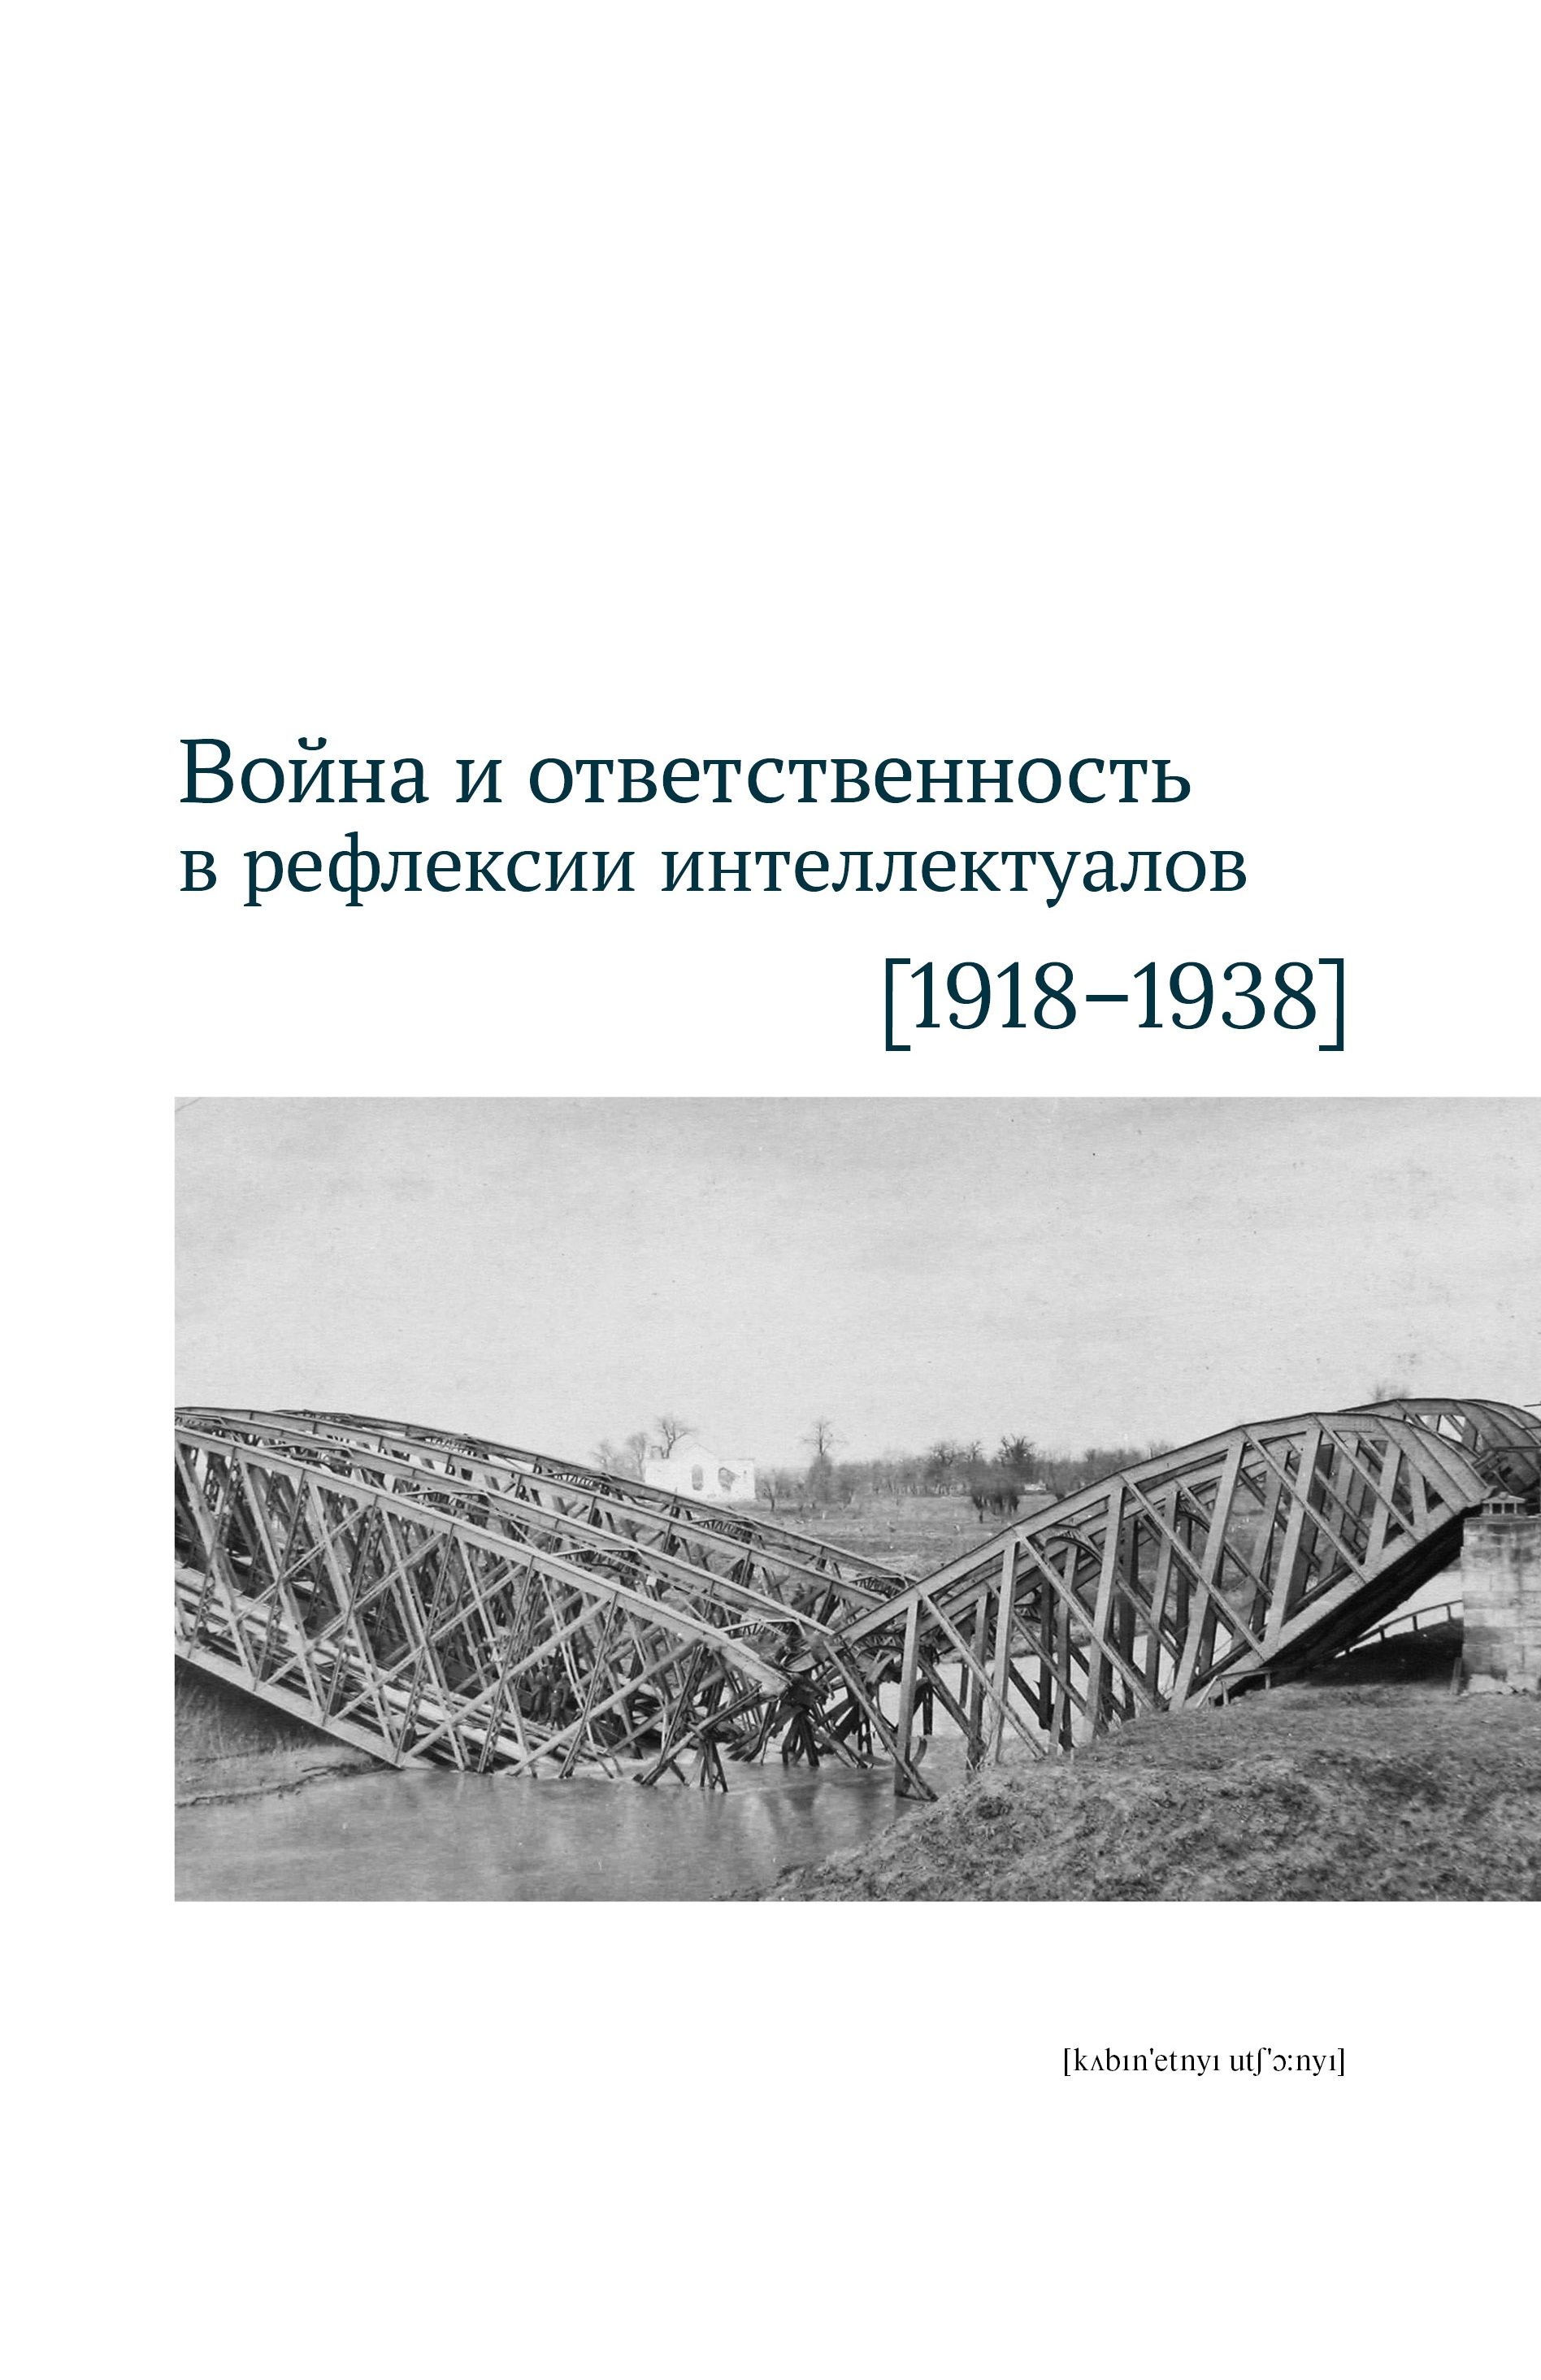  - Война и ответственность в рефлексии интеллектуалов 1918-1938